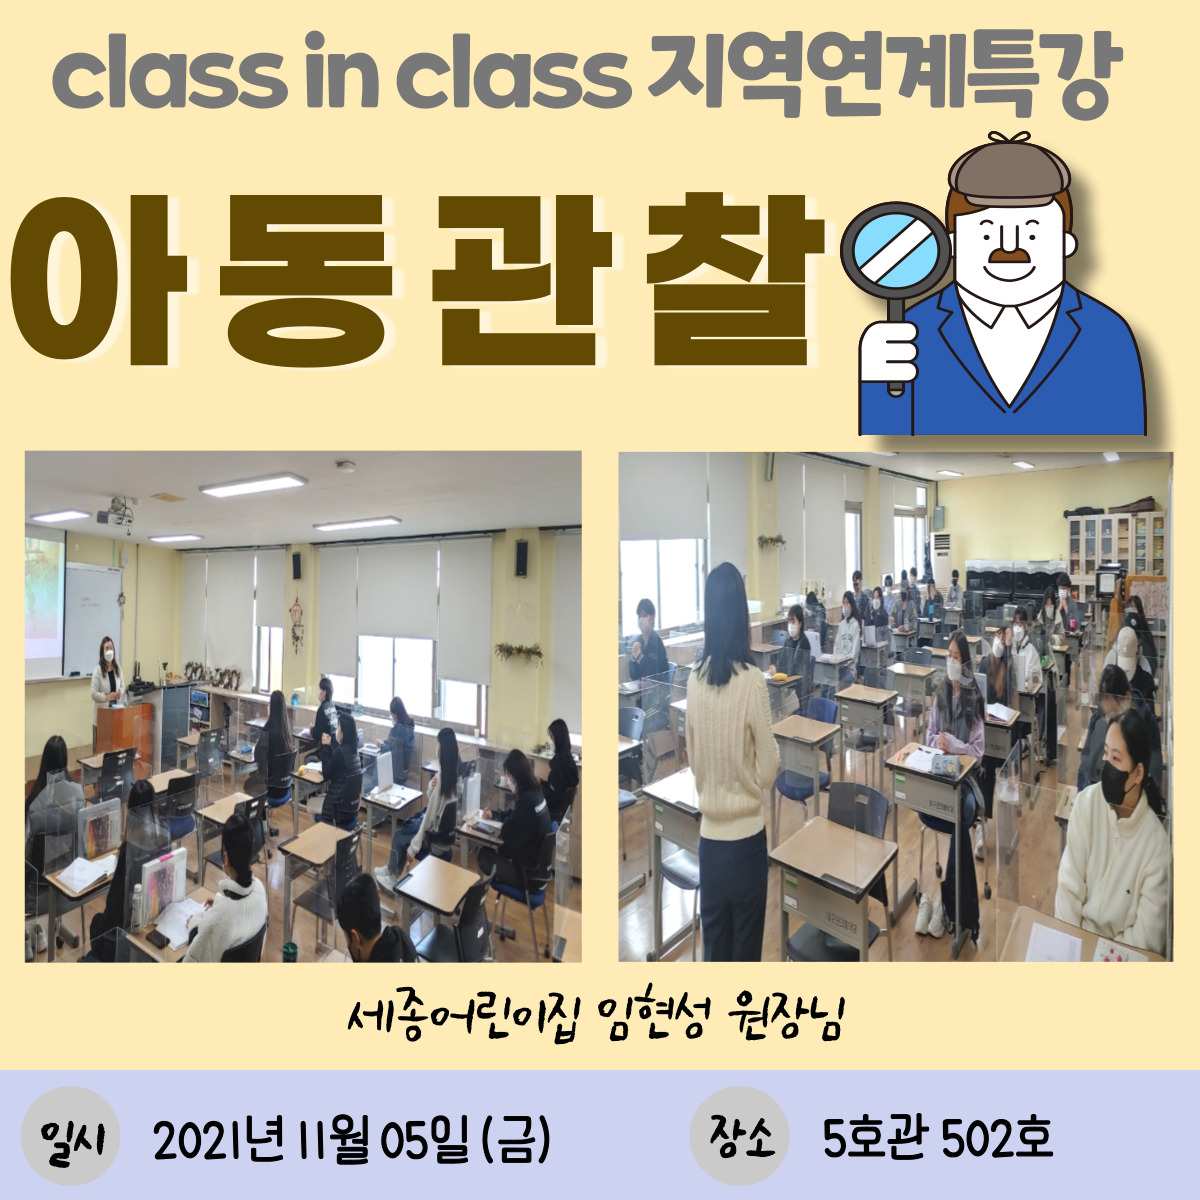 (11/5) Class in Class 지역연계특강 세종어린이집 원장님 초빙 특강